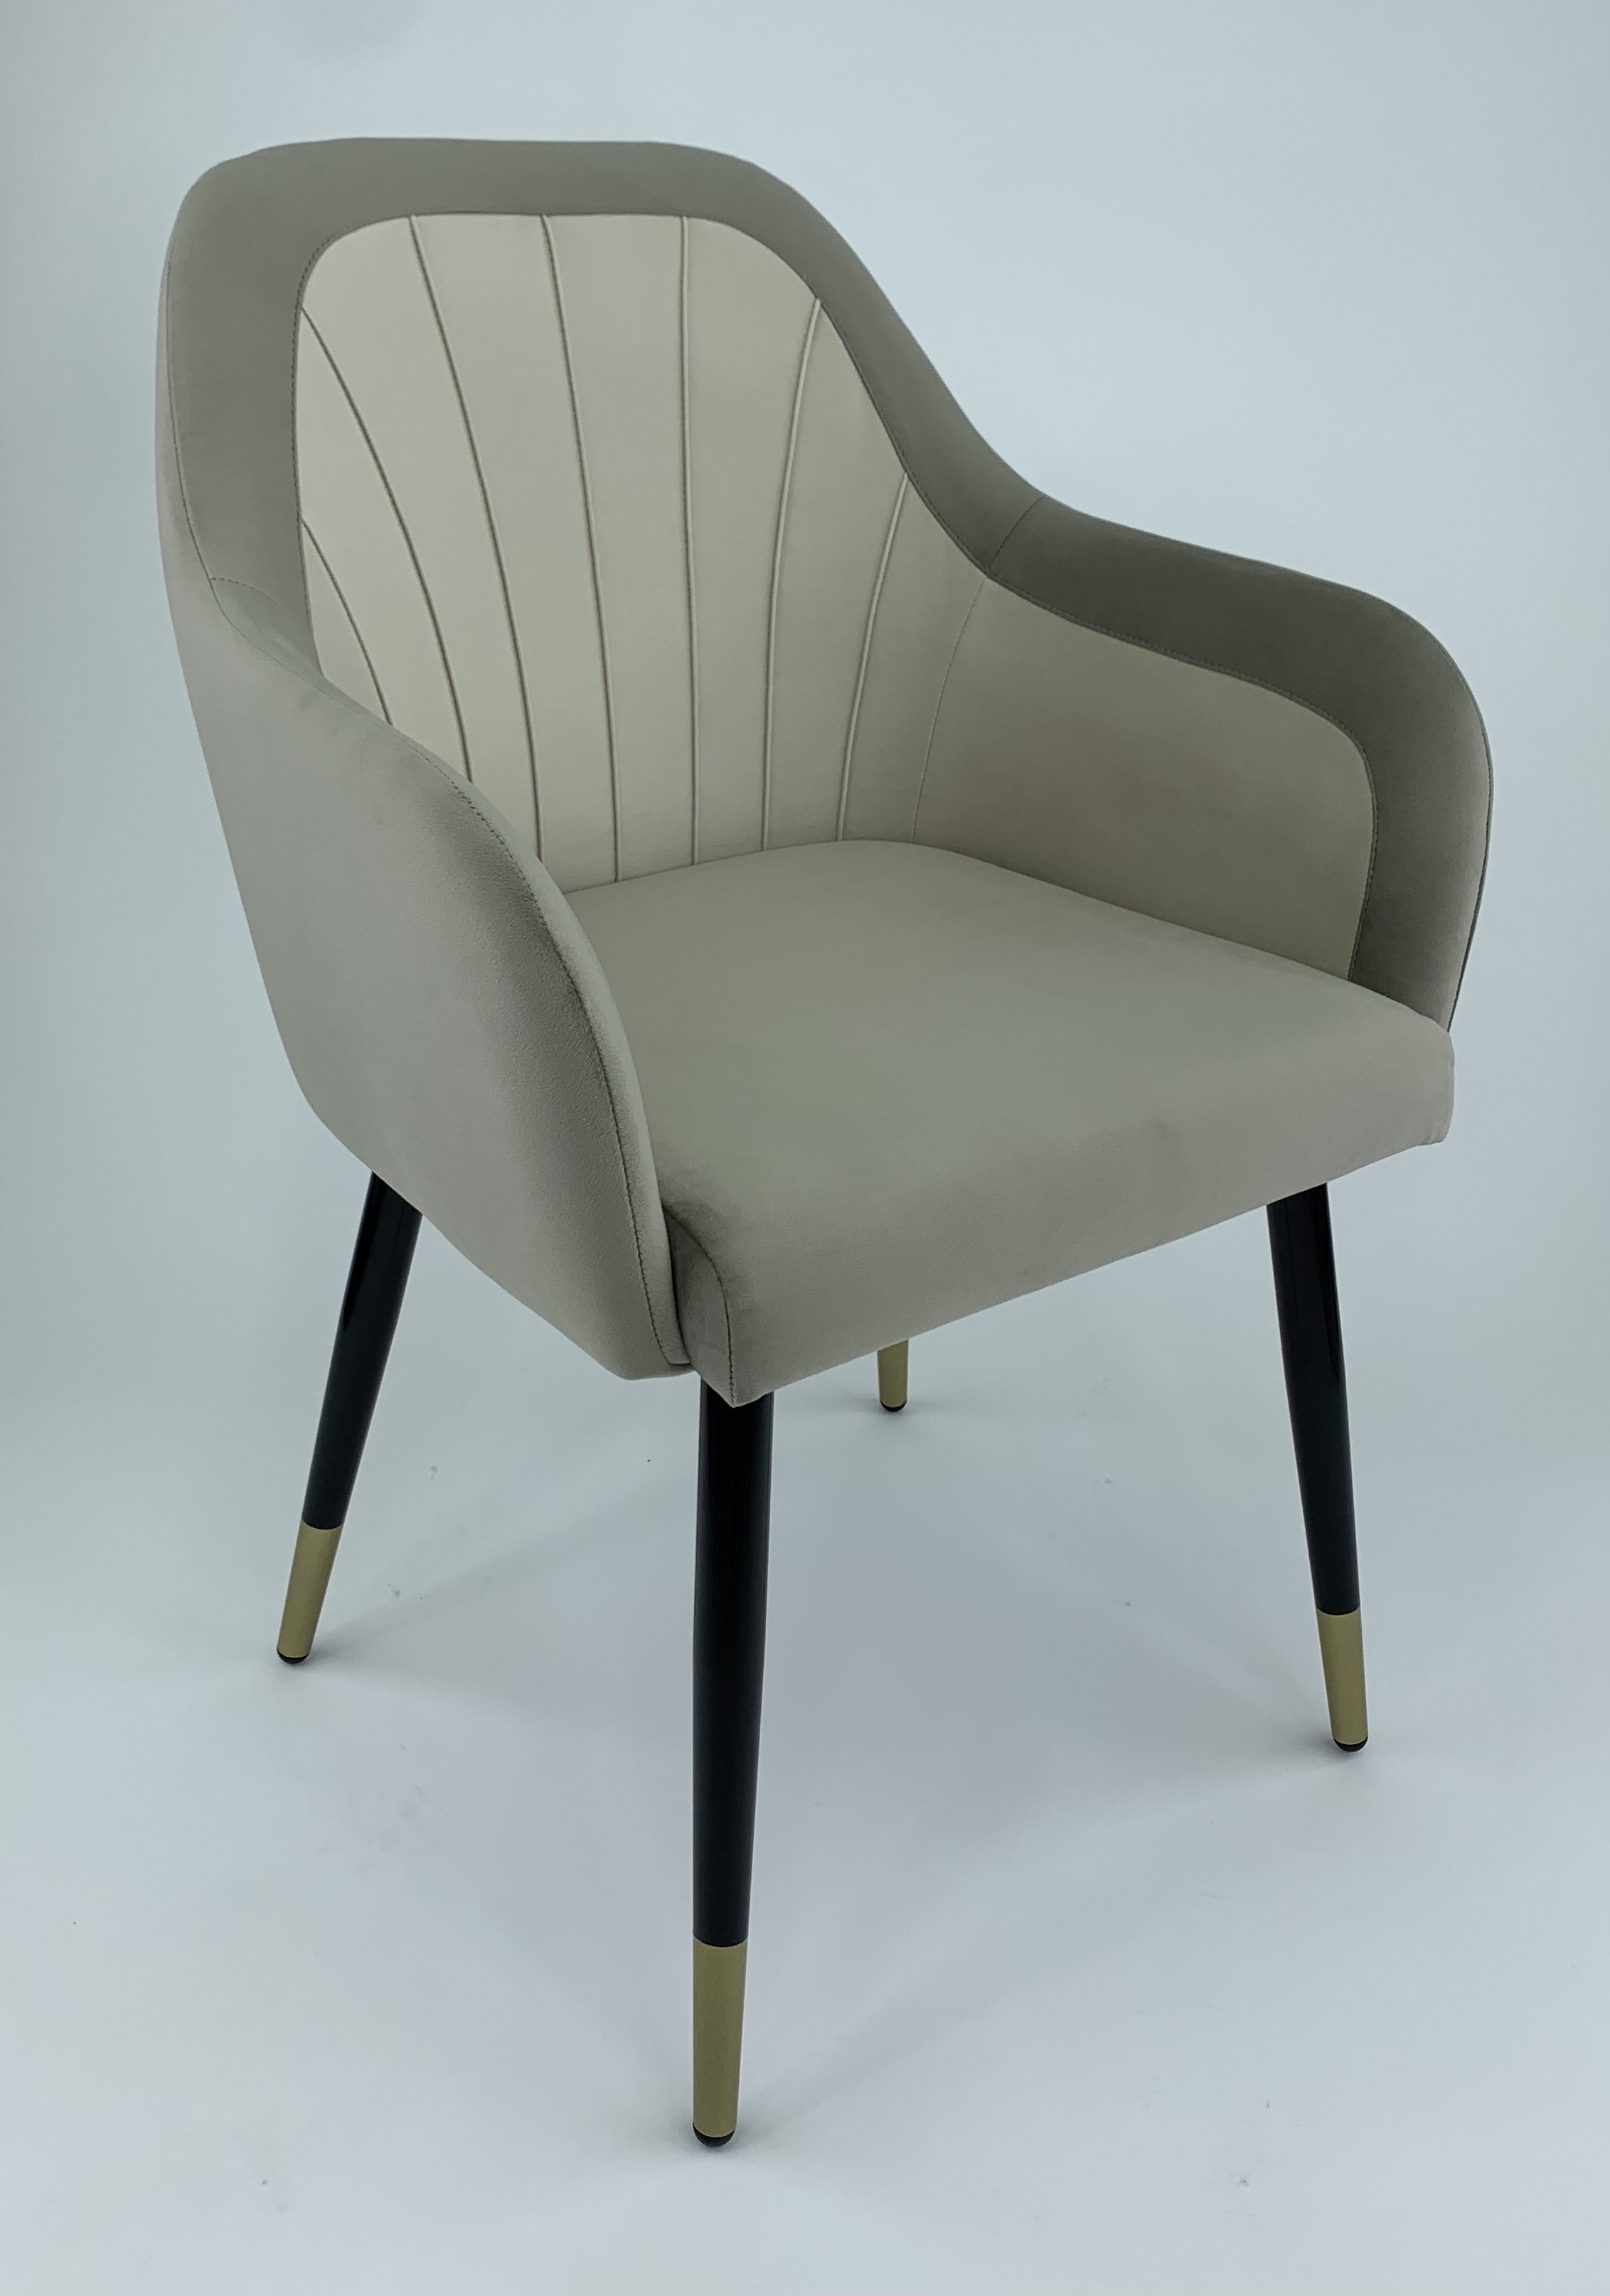 90203160 Стул-кресло мебель для столовой/гостинной/спальни цвет бежевый Агат STLM-0131108 MILAVIO